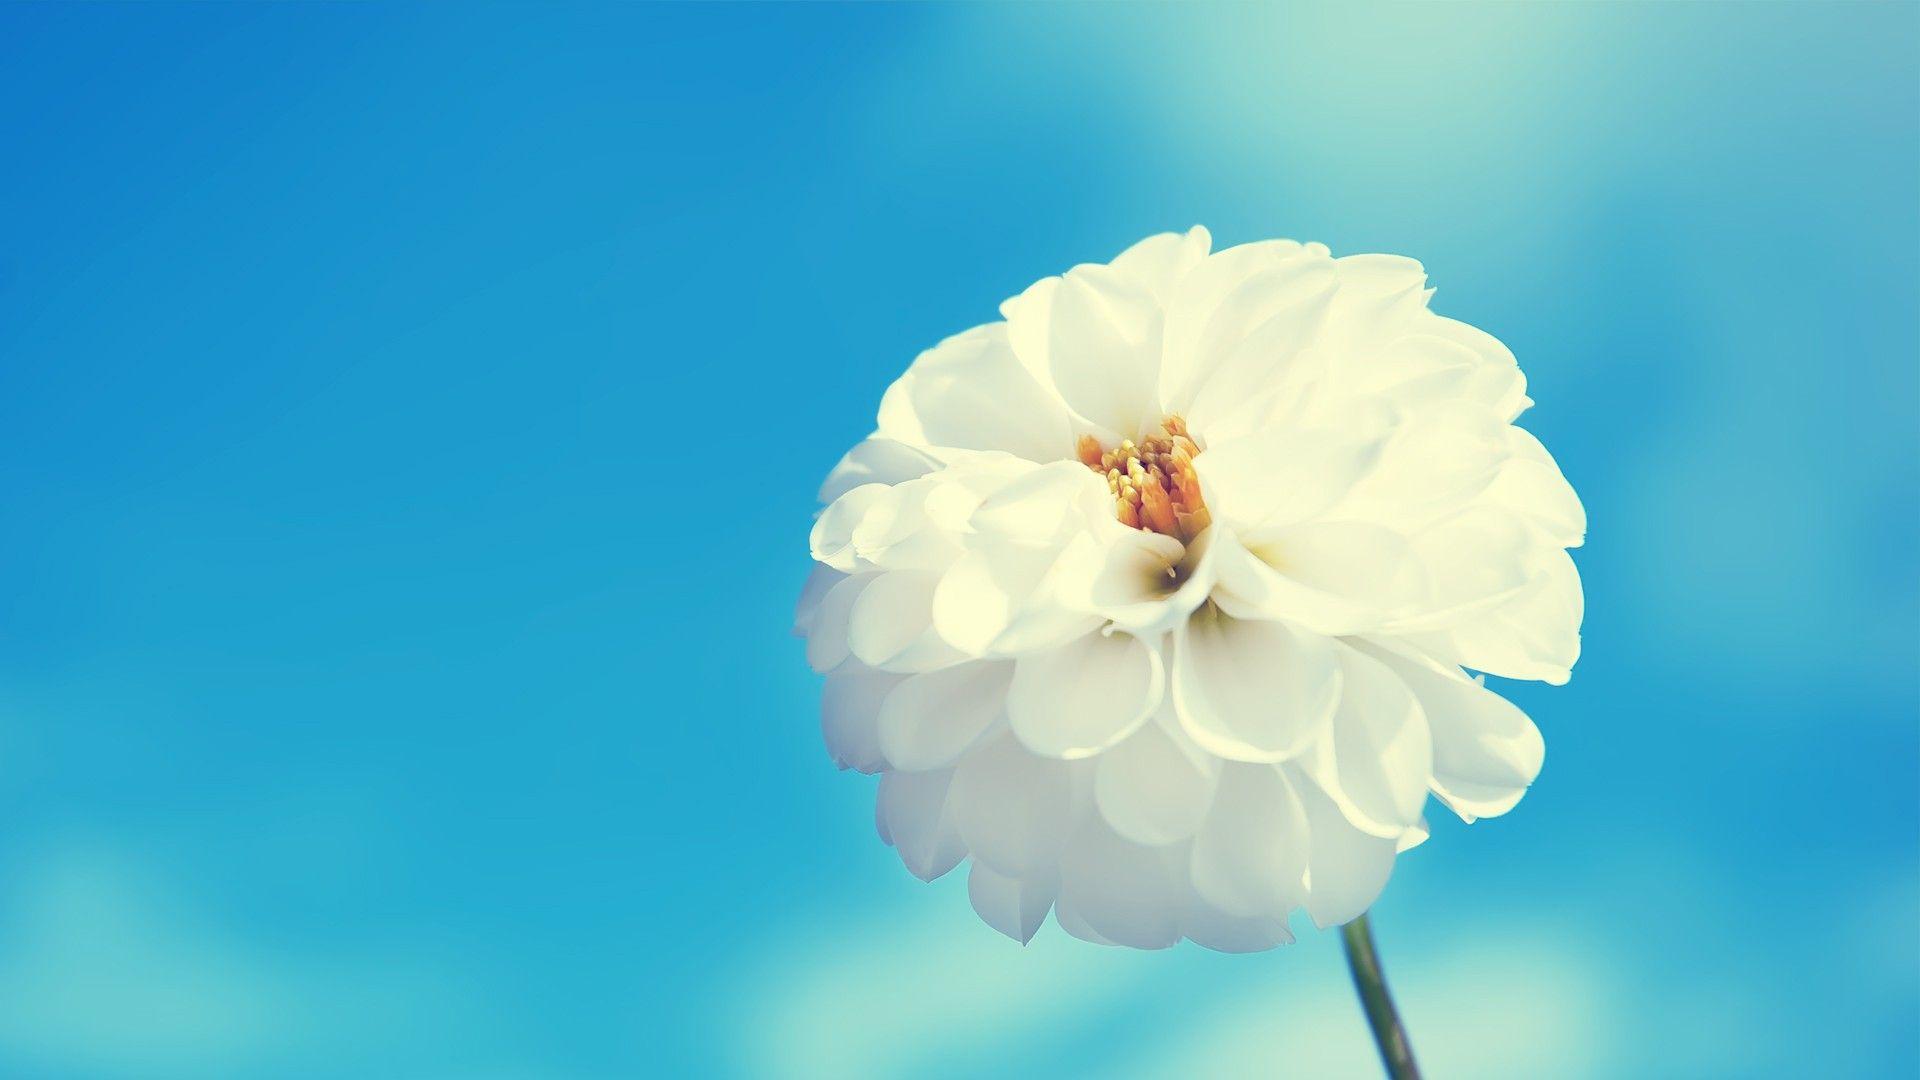 Hình ảnh hoa trắng: Những bông hoa trắng giản đơn nhưng lại đầy tinh tế và thanh lịch sẽ gợi lên trong bạn cảm giác yên bình và tươi tắn. Hãy chiêm ngưỡng những hình ảnh hoa trắng tuyệt đẹp và cảm nhận sự độc đáo của chúng trên từng cánh đồng hoa tươi tắn.